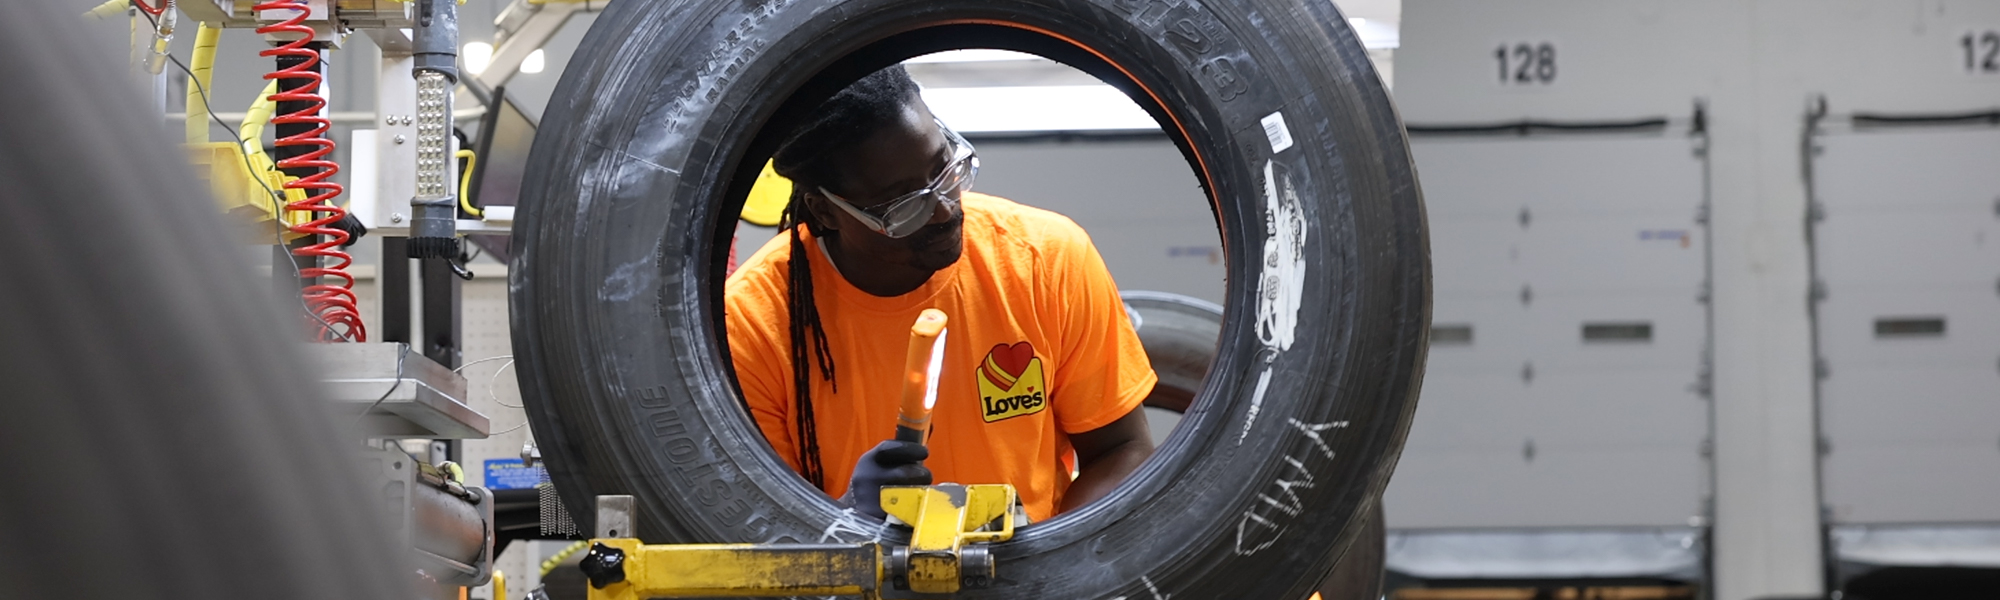 Retread employee working on a retread tire.